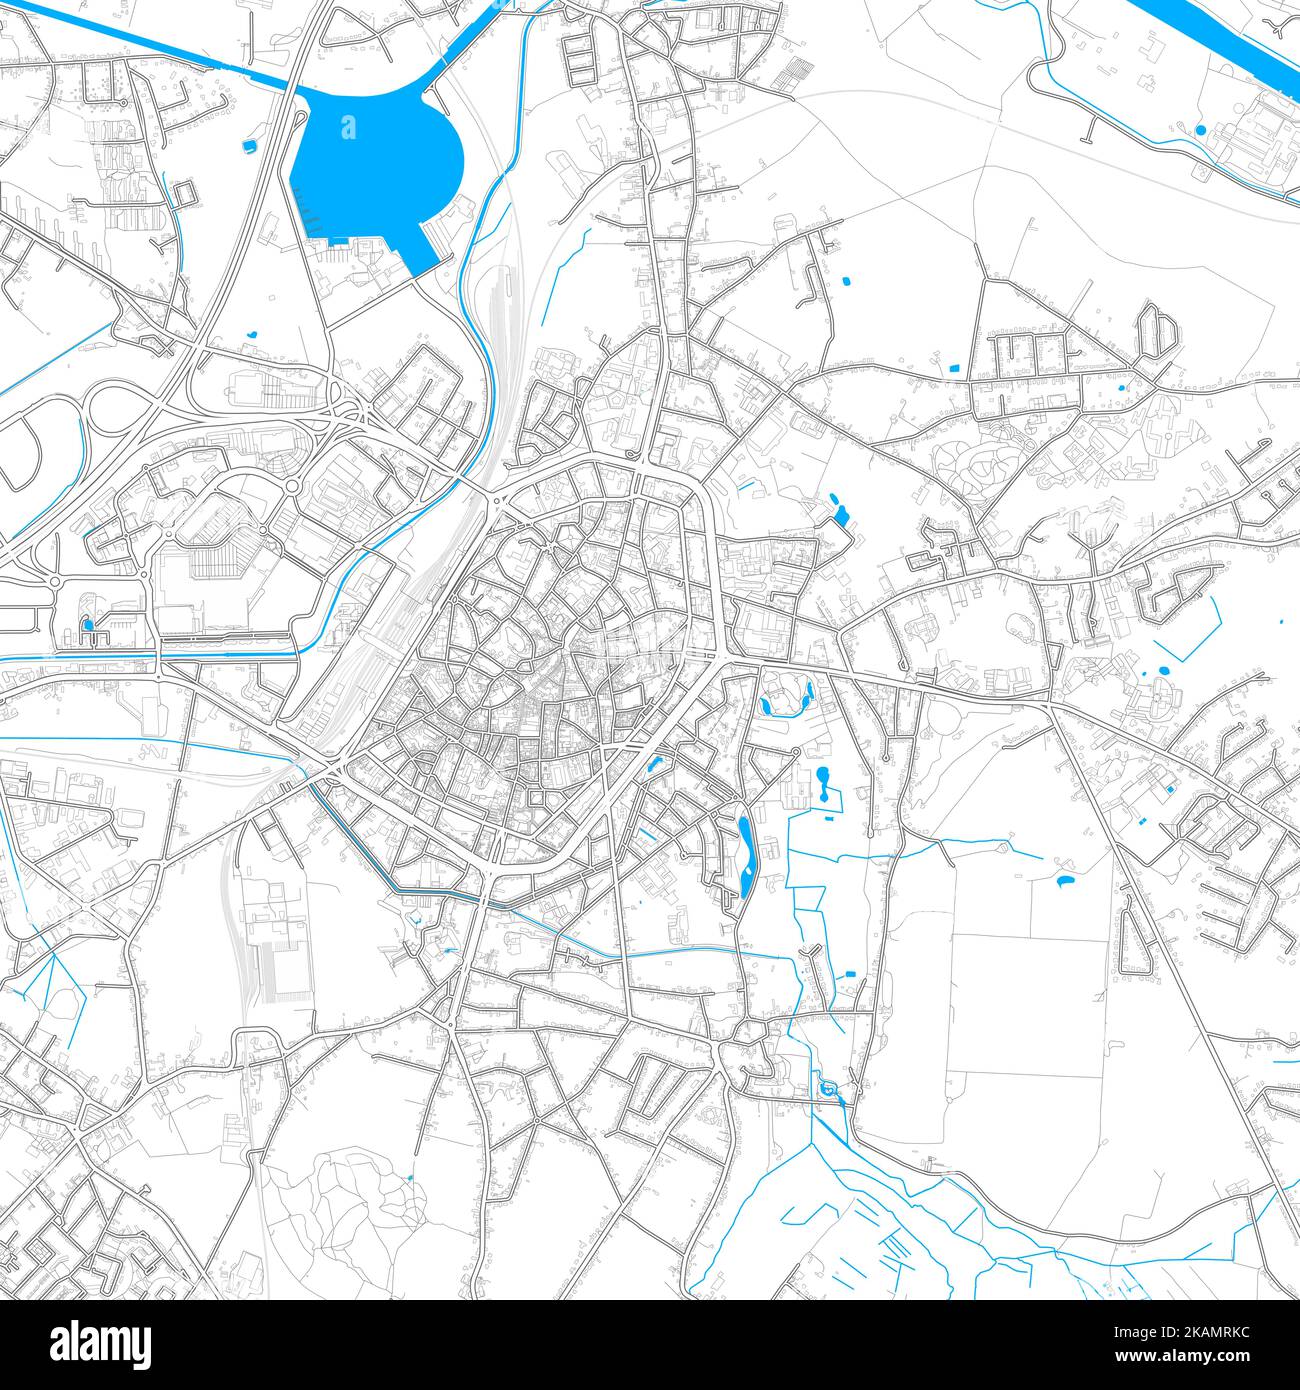 Mons, Hennegau, Belgien hochauflösende Vektorkarte mit editierbaren Pfaden. Helle Umrisse für Hauptstraßen. Verwenden Sie es für jeden gedruckten und digitalen Hintergrund. Stock Vektor